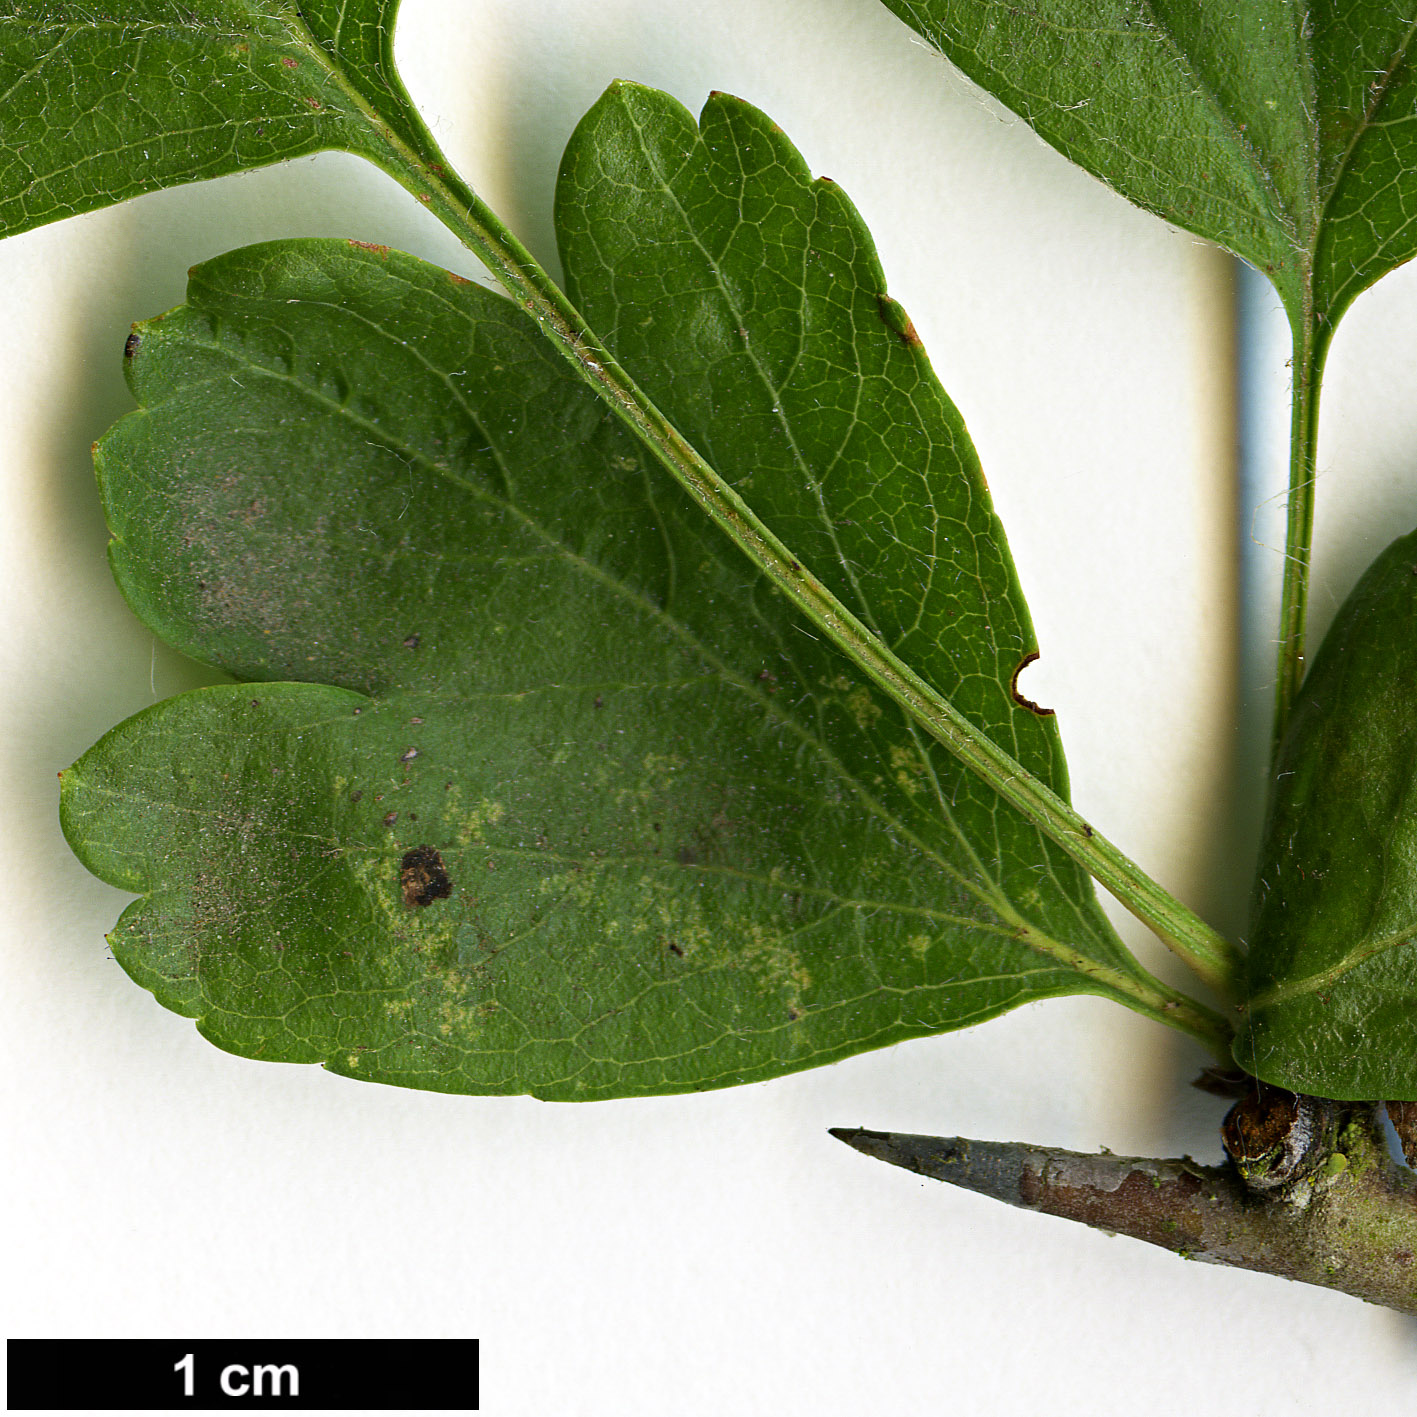 High resolution image: Family: Rosaceae - Genus: Crataegus - Taxon: ×media - SpeciesSub: 'Paul's Scarlet' (C.laevigata × C.monogyna)